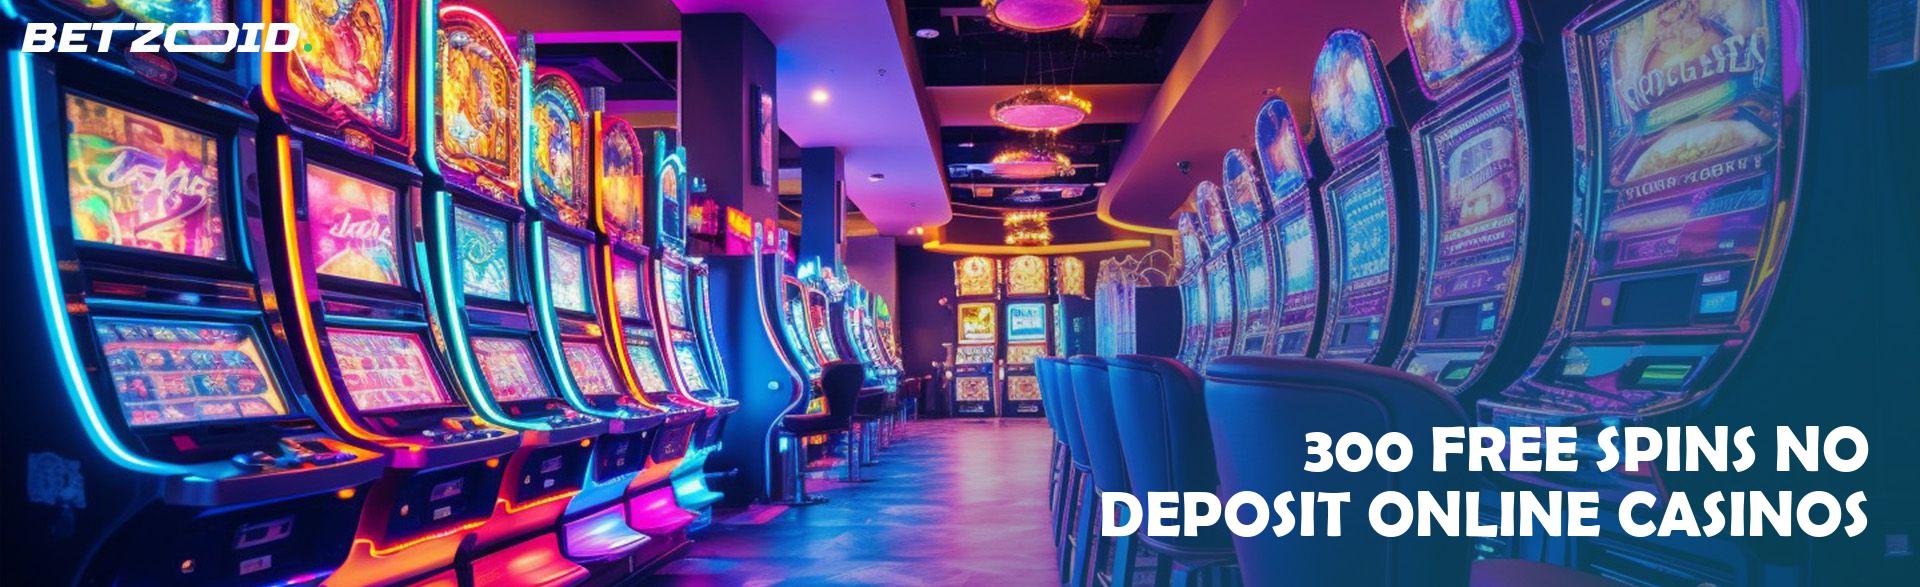 300 Free Spins No Deposit Online Casinos.